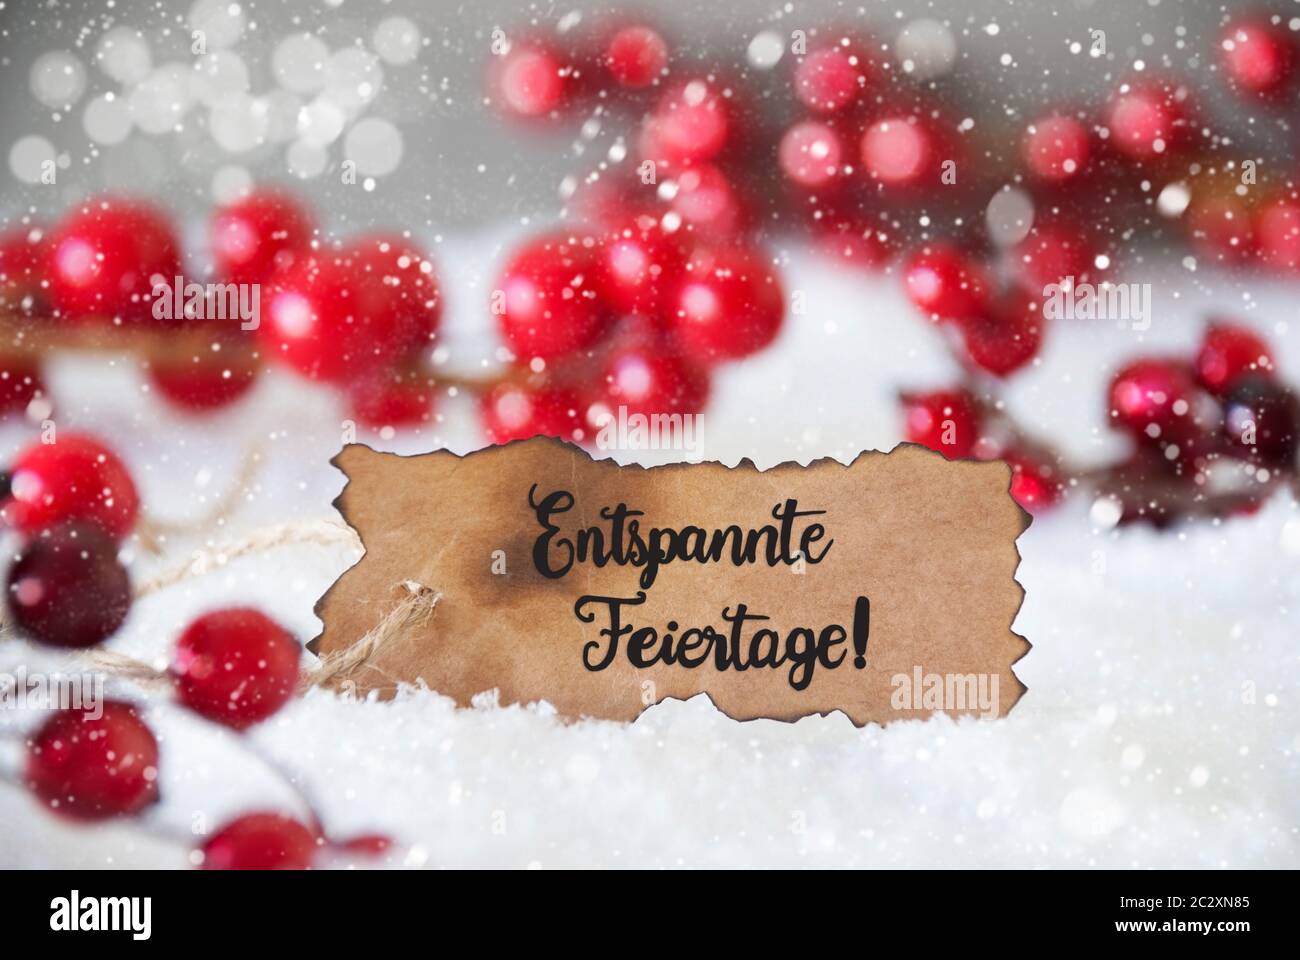 Etiqueta quemada con caligrafía alemana Entspannte Feiertage significa Feliz Navidad. Rojo Decoración de Navidad con Nieve y copos de nieve Foto de stock